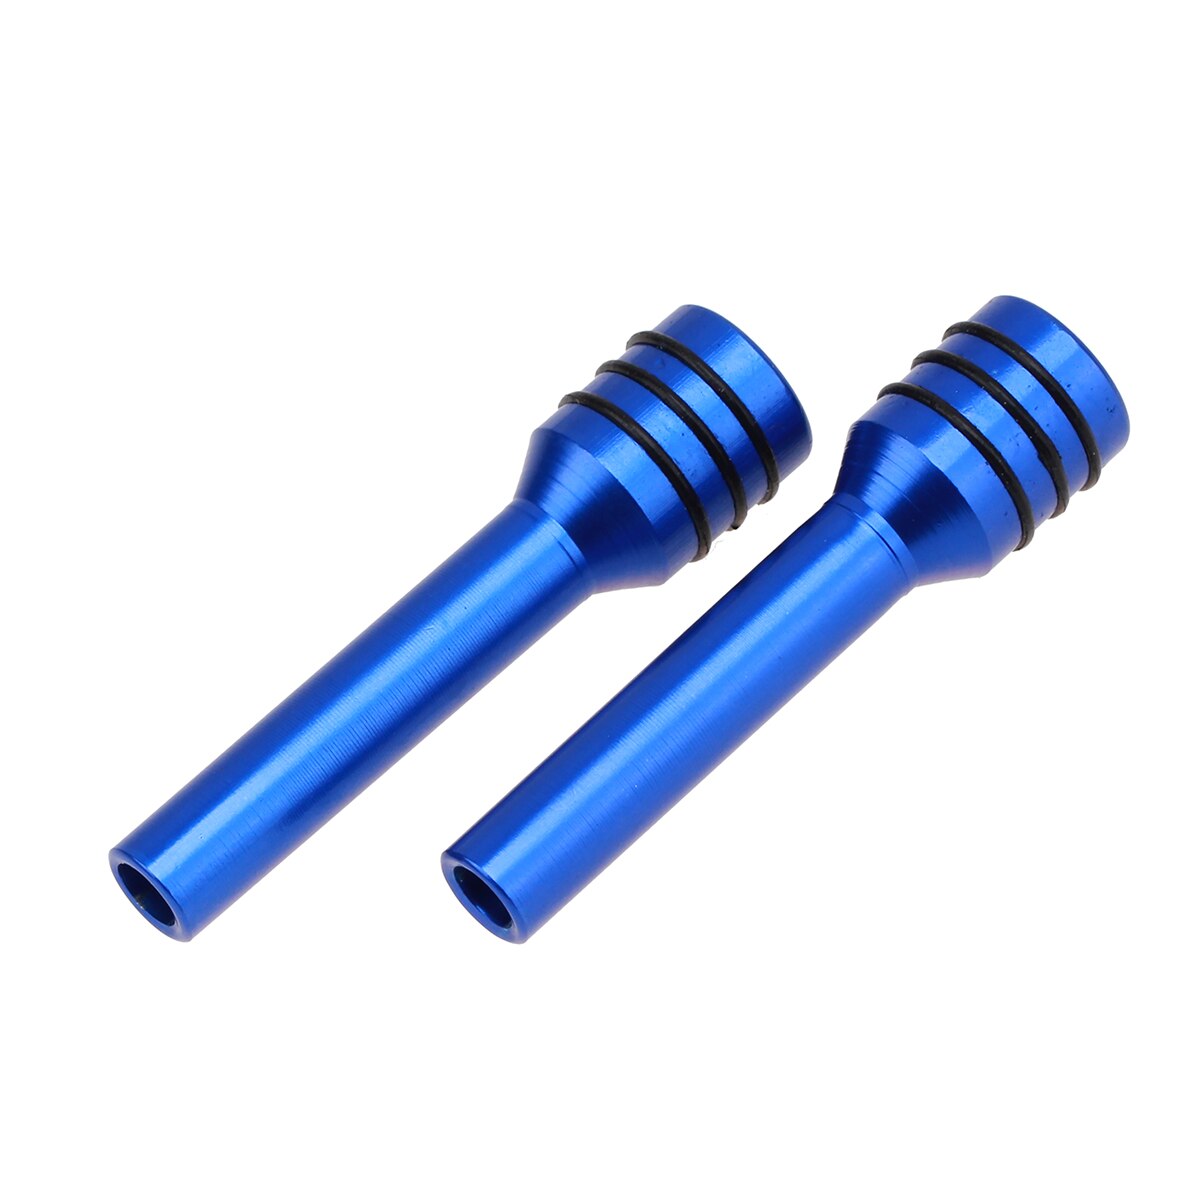 4x kulfiber bilbolt dørlås stick pin cap trim til bmw  e46 e90 e60 e36 e39 e87 e92 f10 f20 f30 x1 x3 x5 e7 x6 tilbehør: 2 x legeret blå